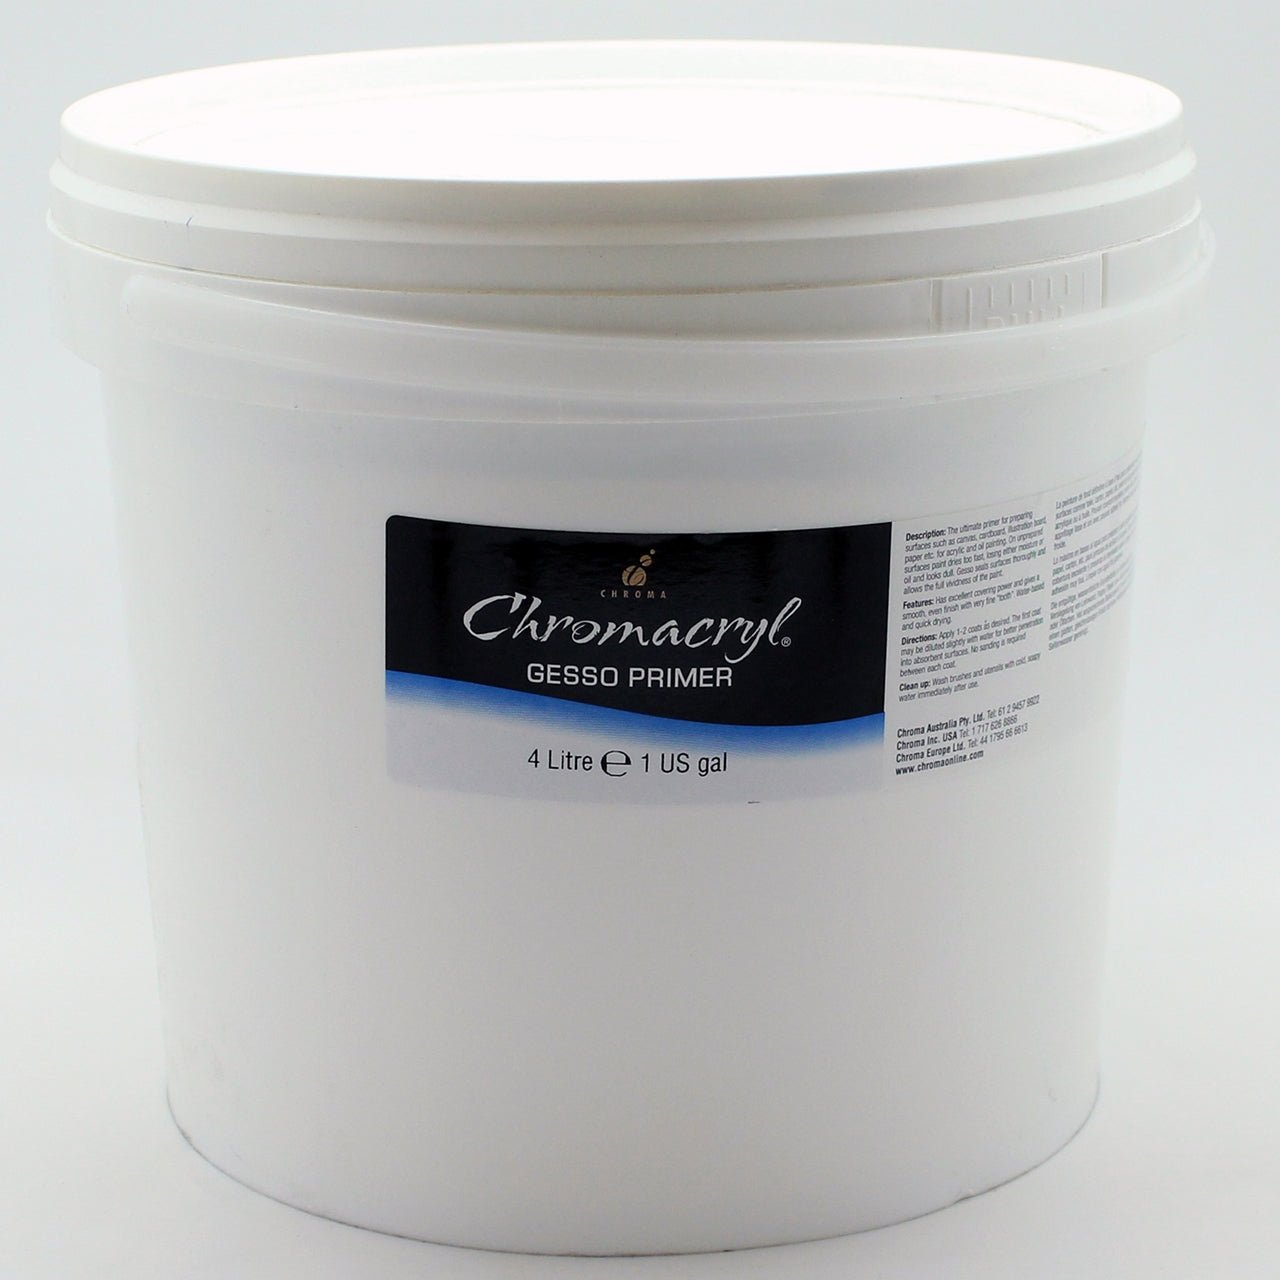 Chromacryl Gesso Primer 4 Litre - theartshop.com.au